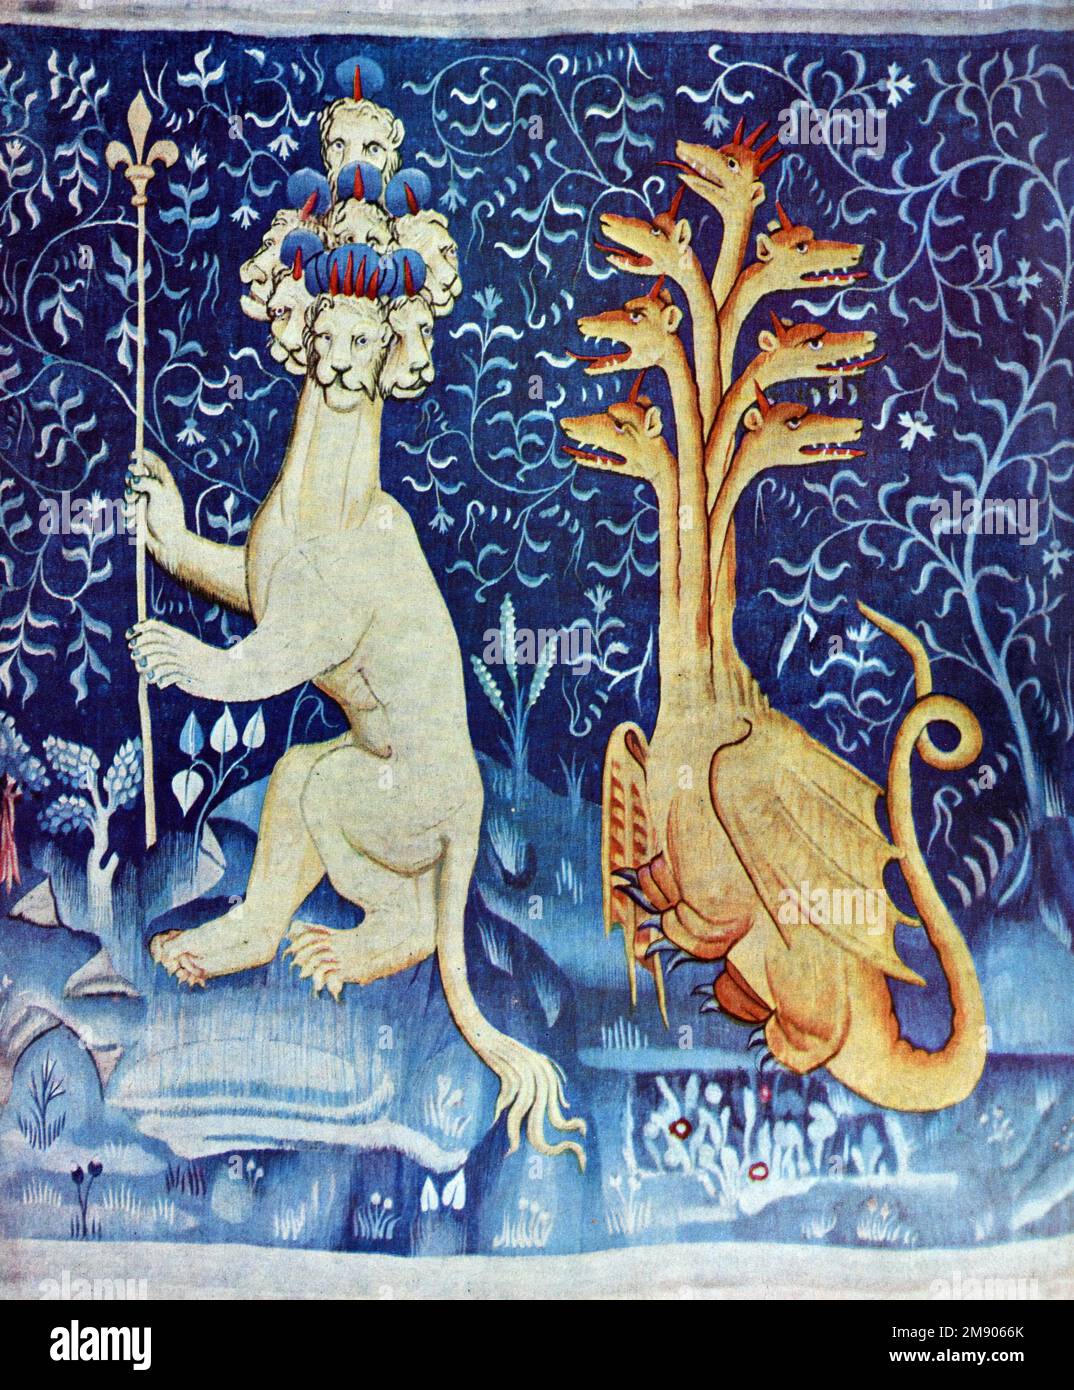 Détail de monstres et de dragons de la tapisserie médiévale de l'Apocalypse (1377-1382) ou Tapestrey de l'Apocalypse d'Angers, basé sur le Livre d'Apocalypse Château d'Angers, France Banque D'Images